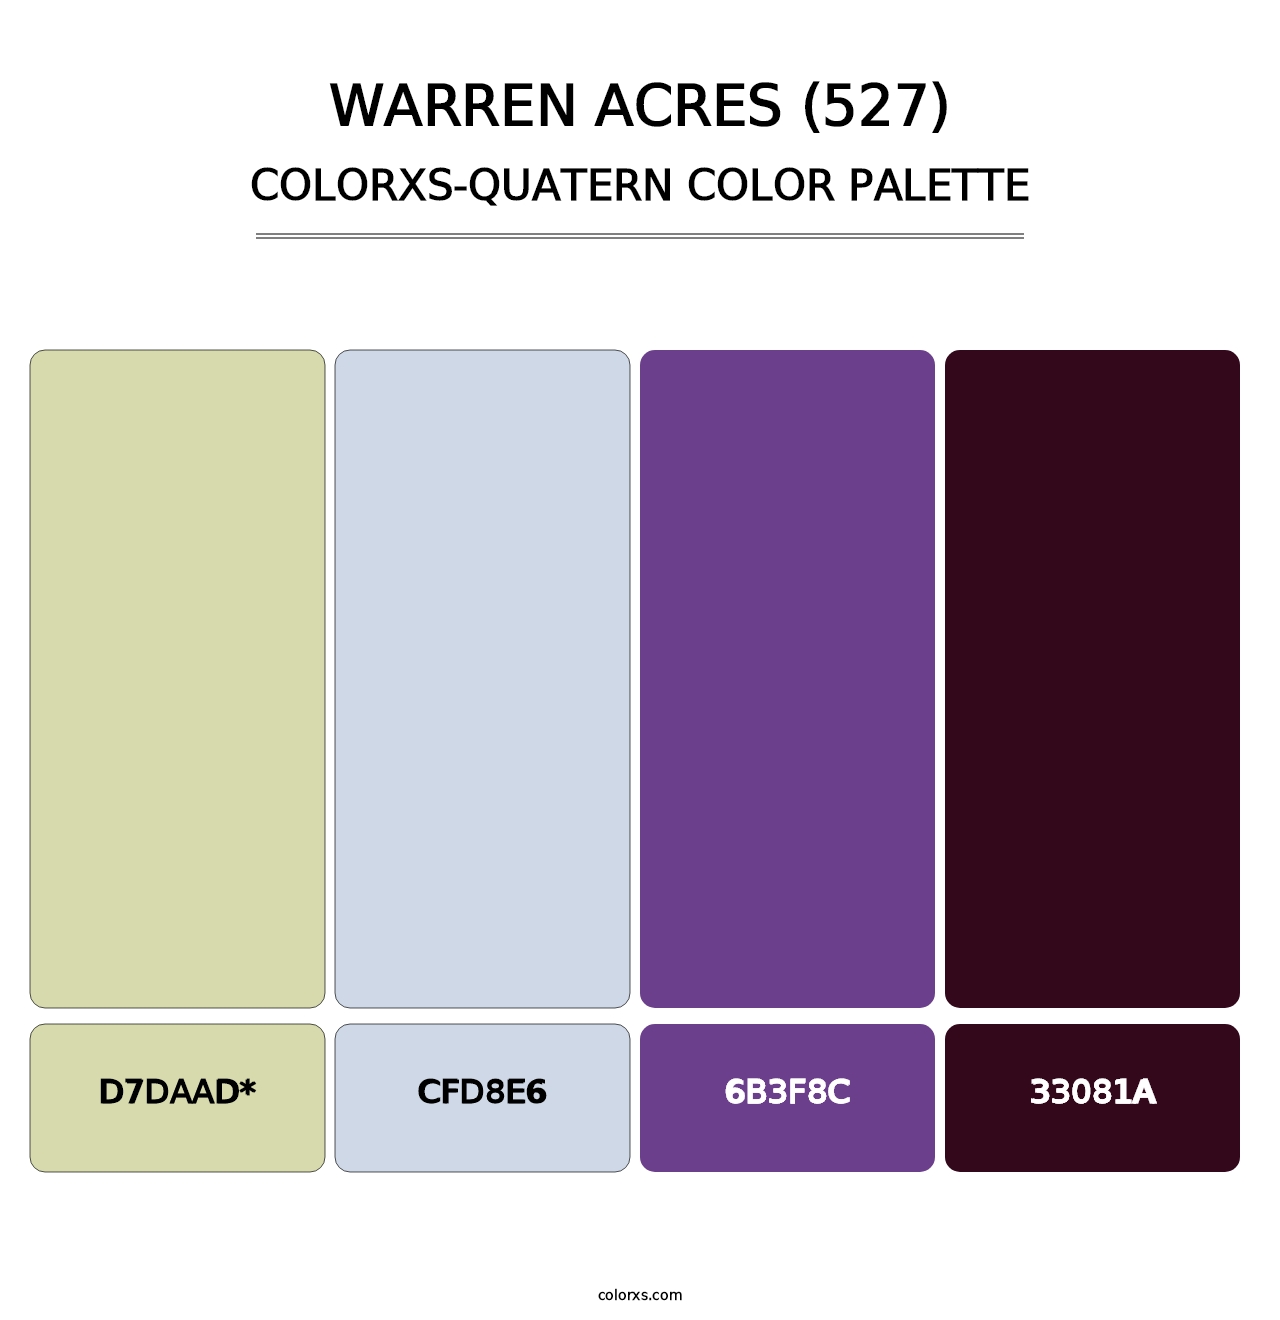 Warren Acres (527) - Colorxs Quatern Palette